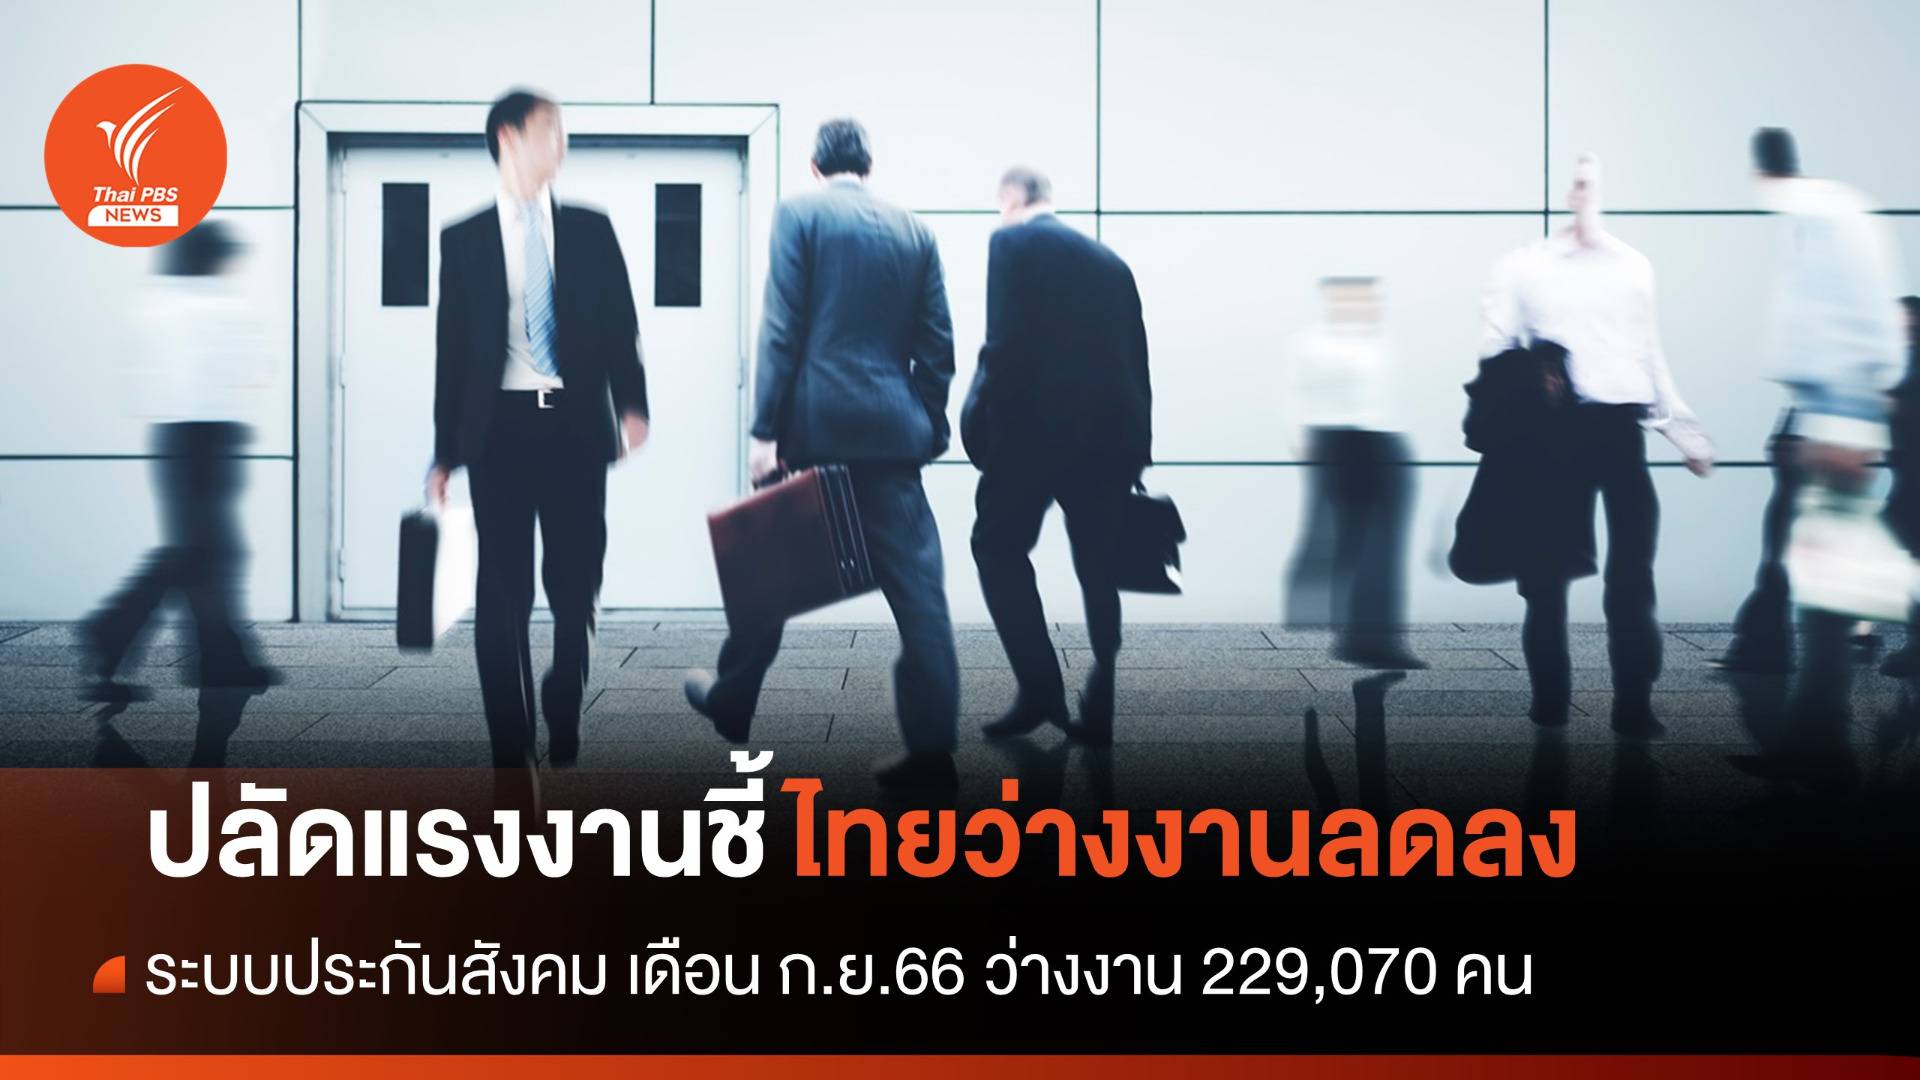 ปลัดแรงงานชี้ไทยว่างงานลดลง-ผู้ประกันตน ม.33 เพิ่ม